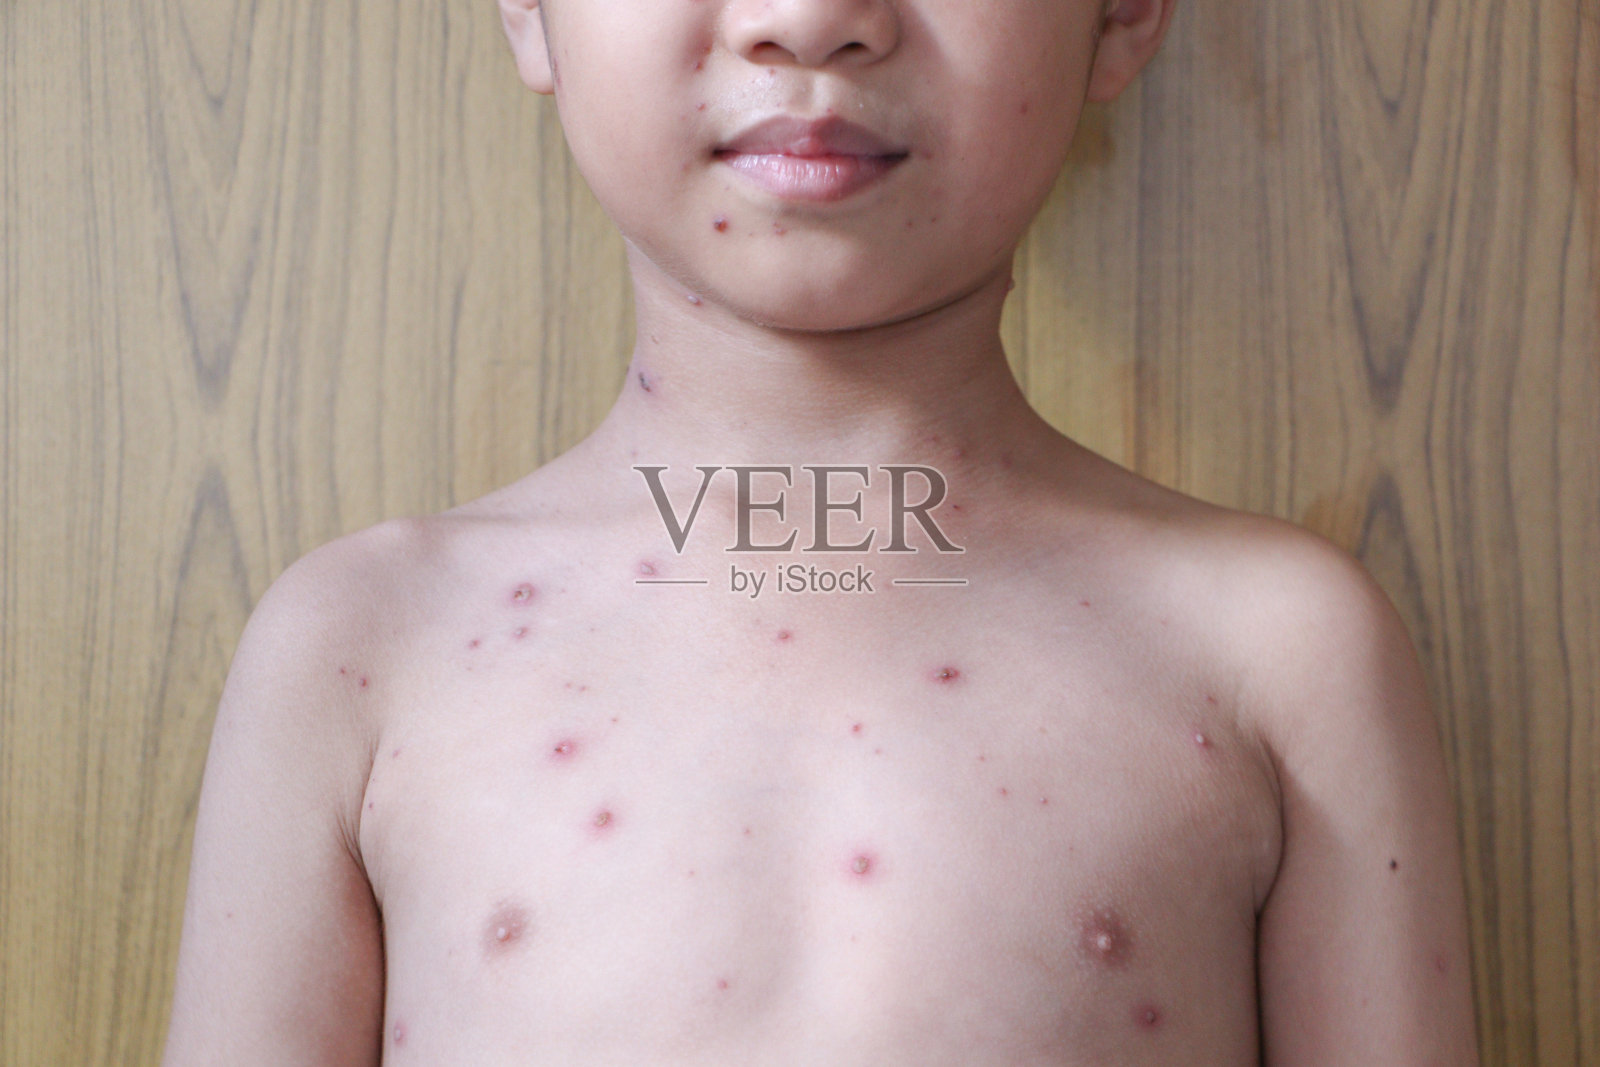 小男孩身上长了水痘。水痘是一种由水痘带状疱疹病毒引起的感染。它最初是起源于面部和躯干的水疱状皮疹照片摄影图片